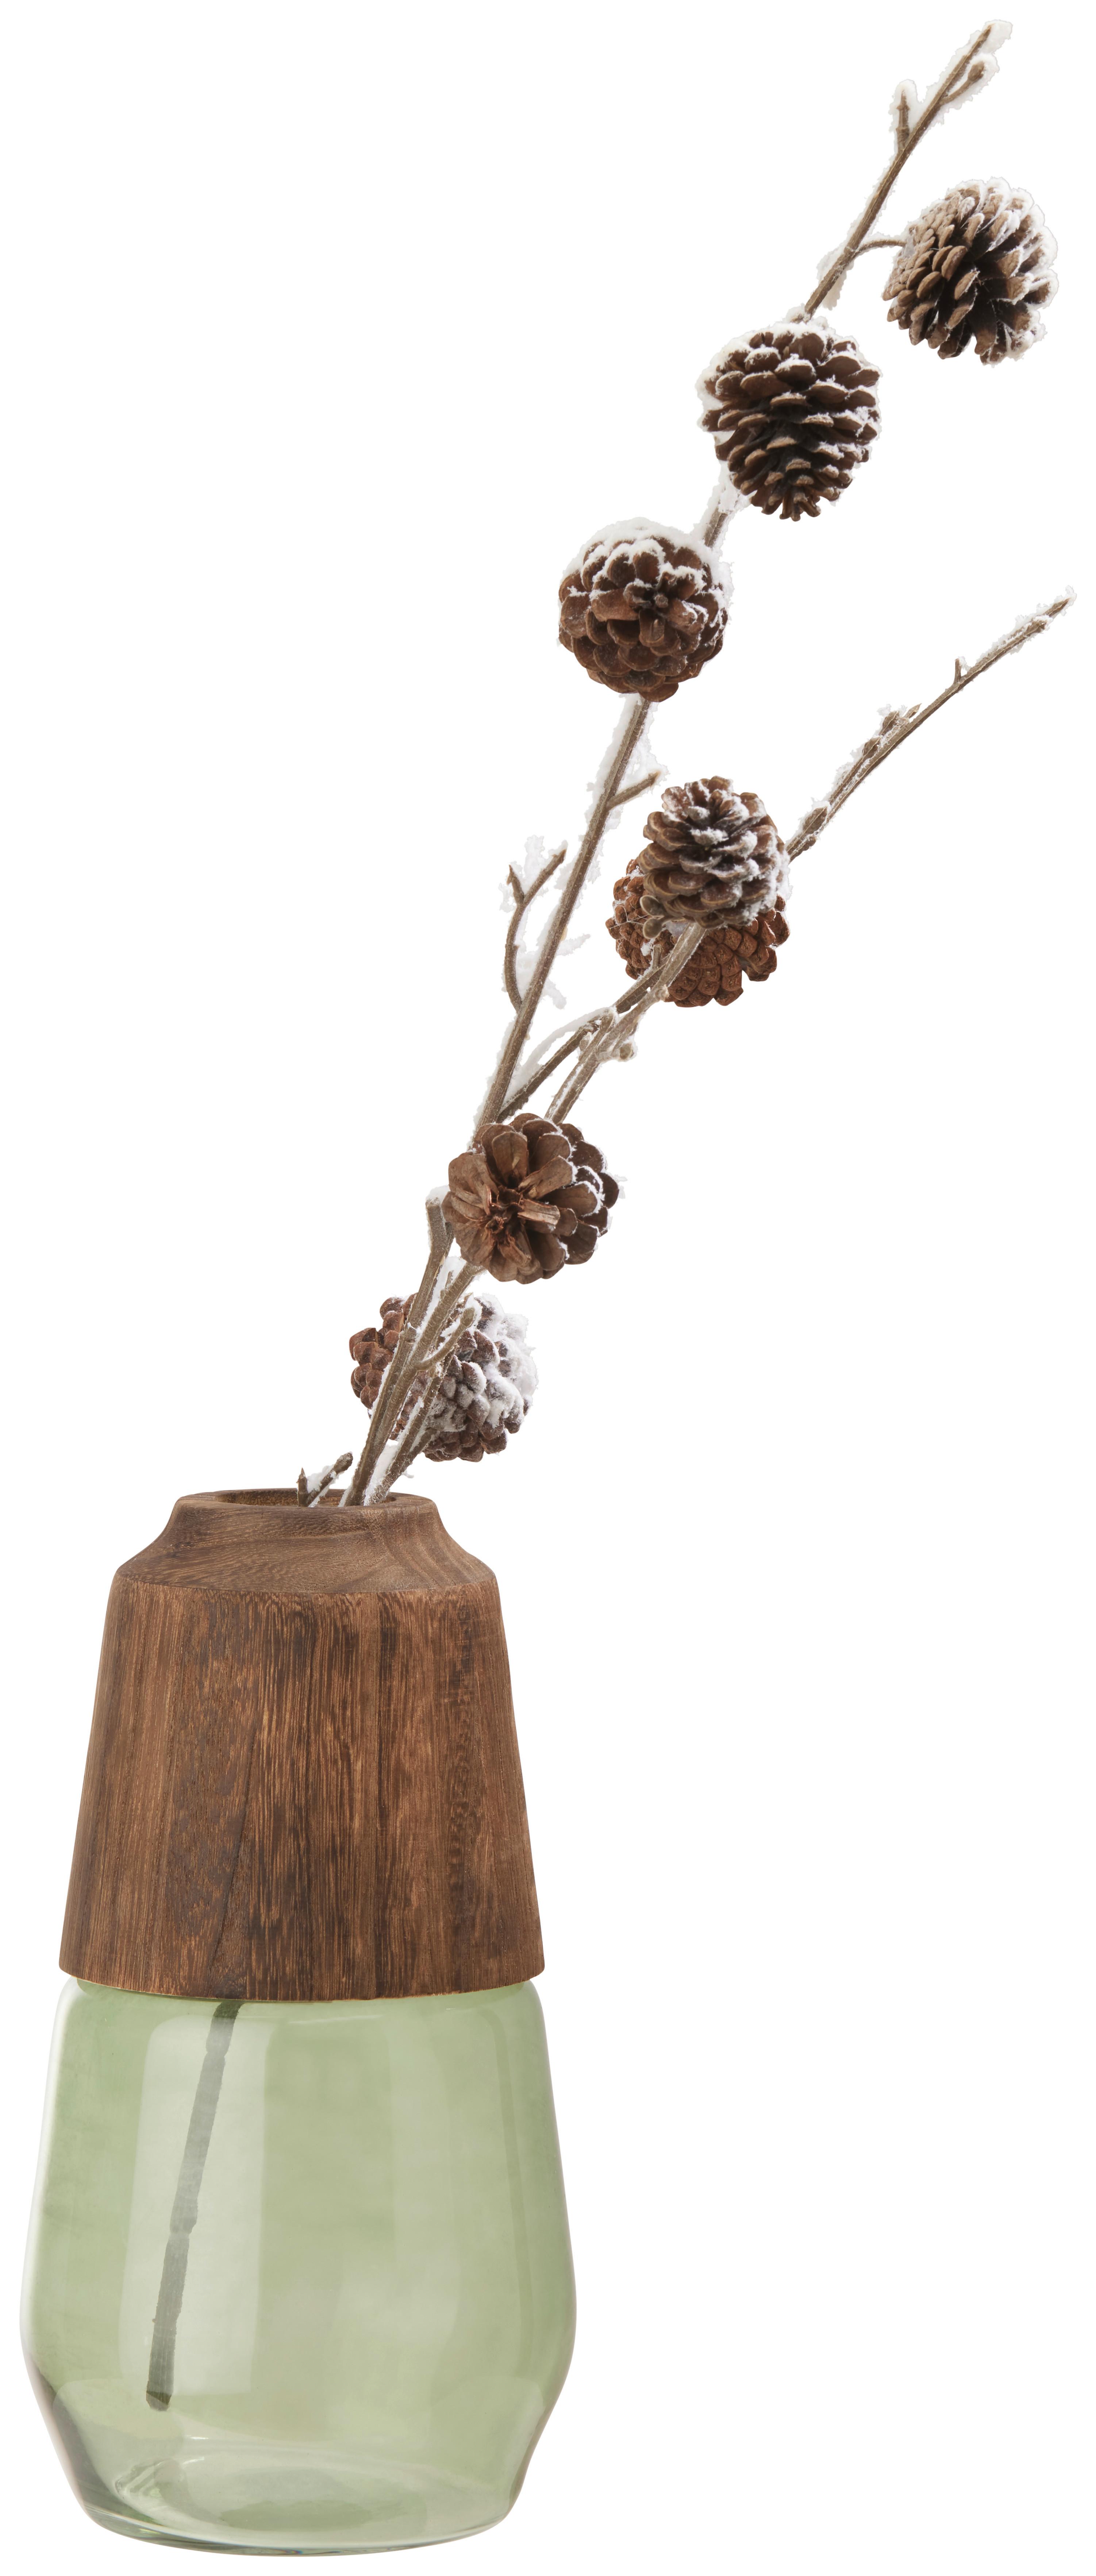 Váza Wood, Výška: 29cm - hnedá/zelená, drevo/sklo (16/29cm) - Premium Living